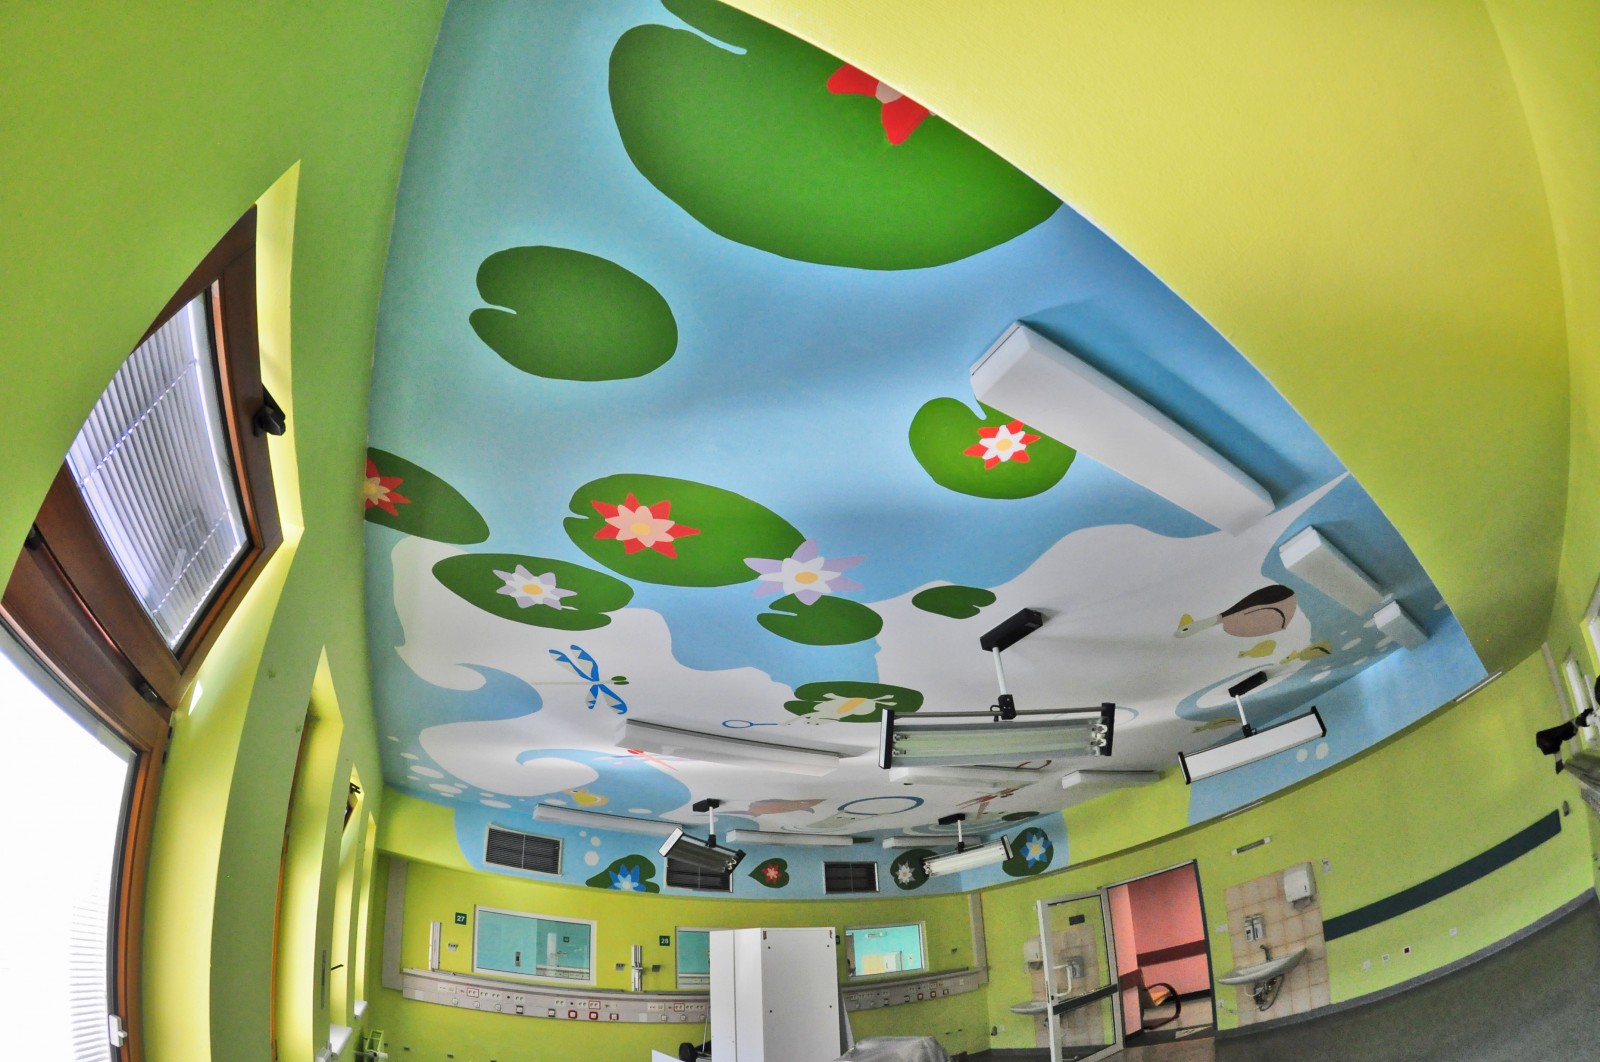 Przemalowany sufit w Centrum Zdrowia Dziecka w Warszawie Operacja Sufit | OP-Saal-Decke vom Kindergesundheitszentrum in Warschau | CSR | O nas